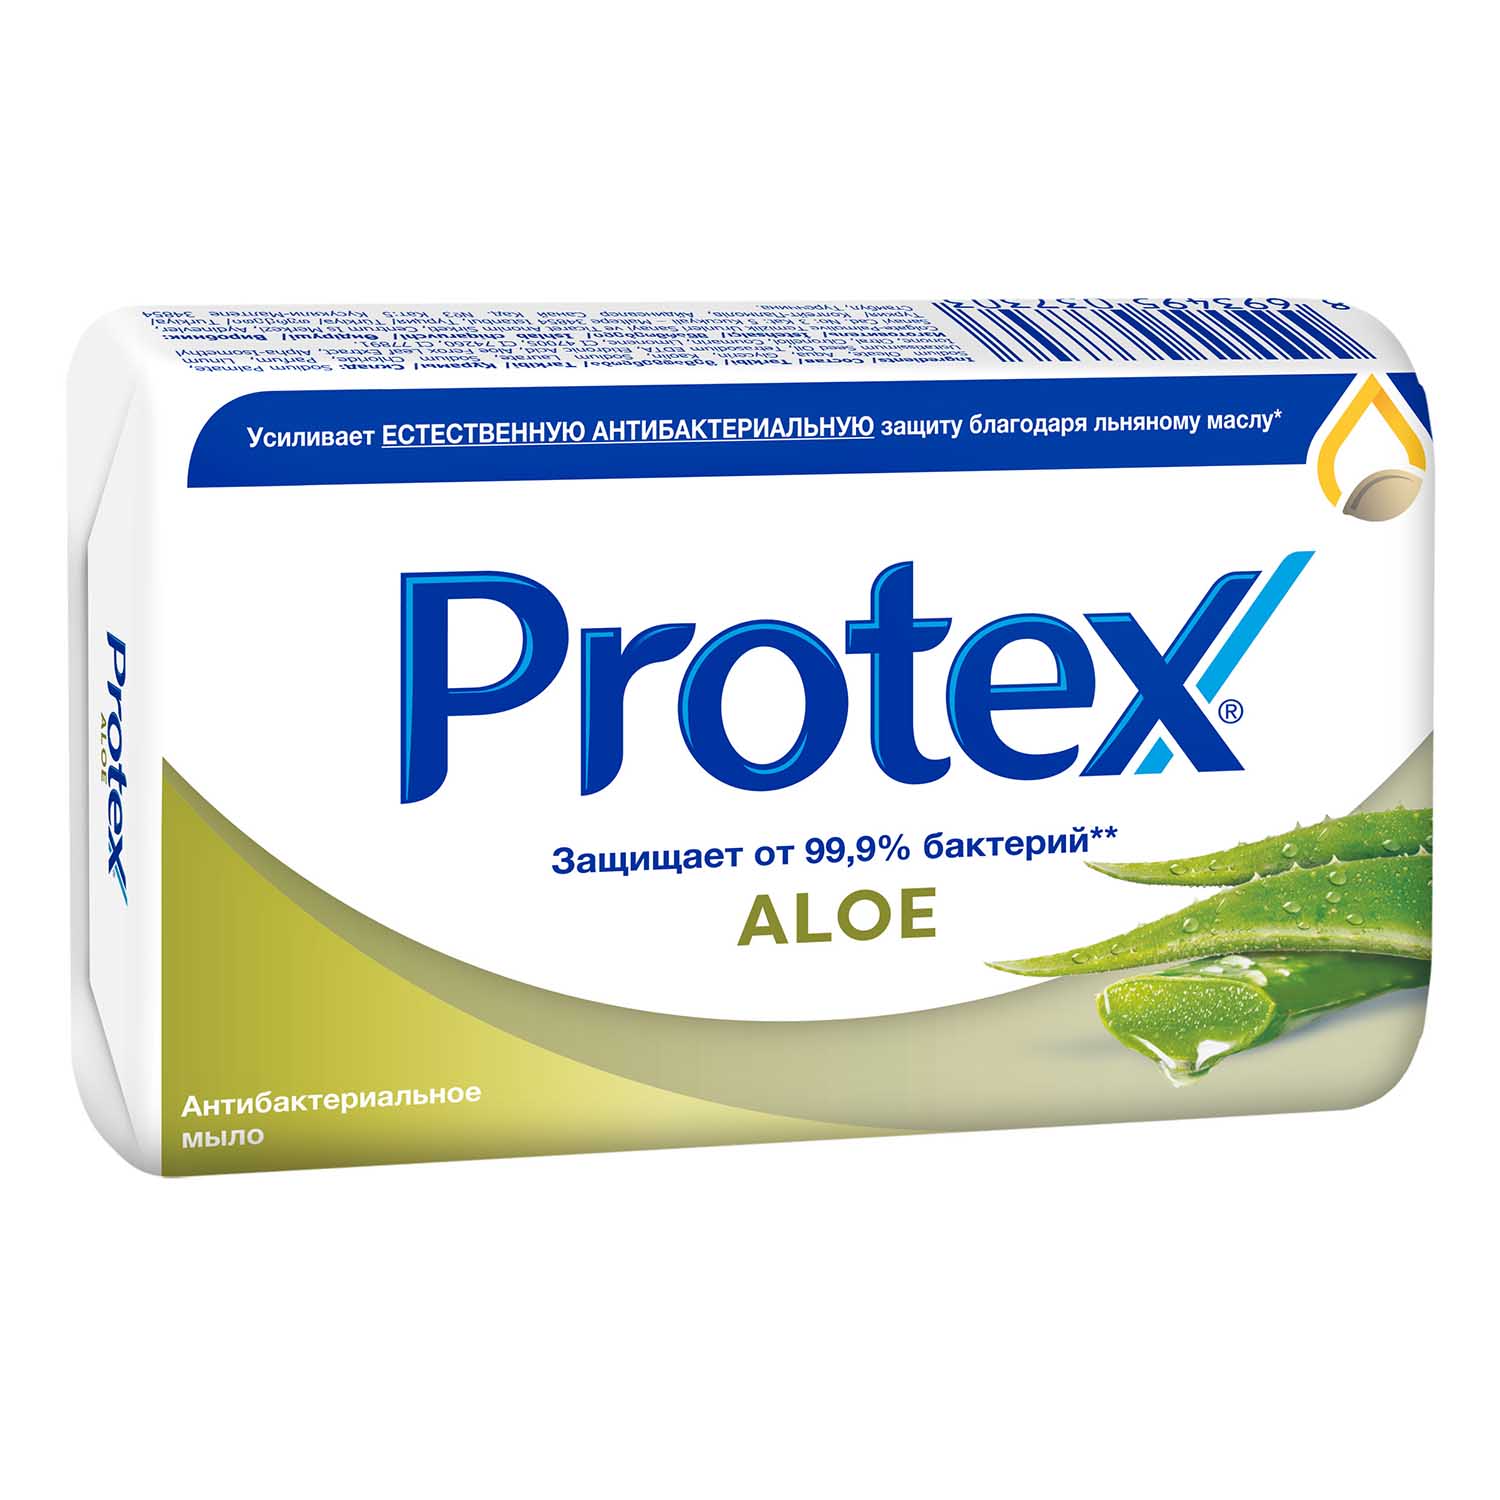 Мыло туалетное Protex Aloe антибактериальное, 90 г антибактериальное туалетное мыло меридиан